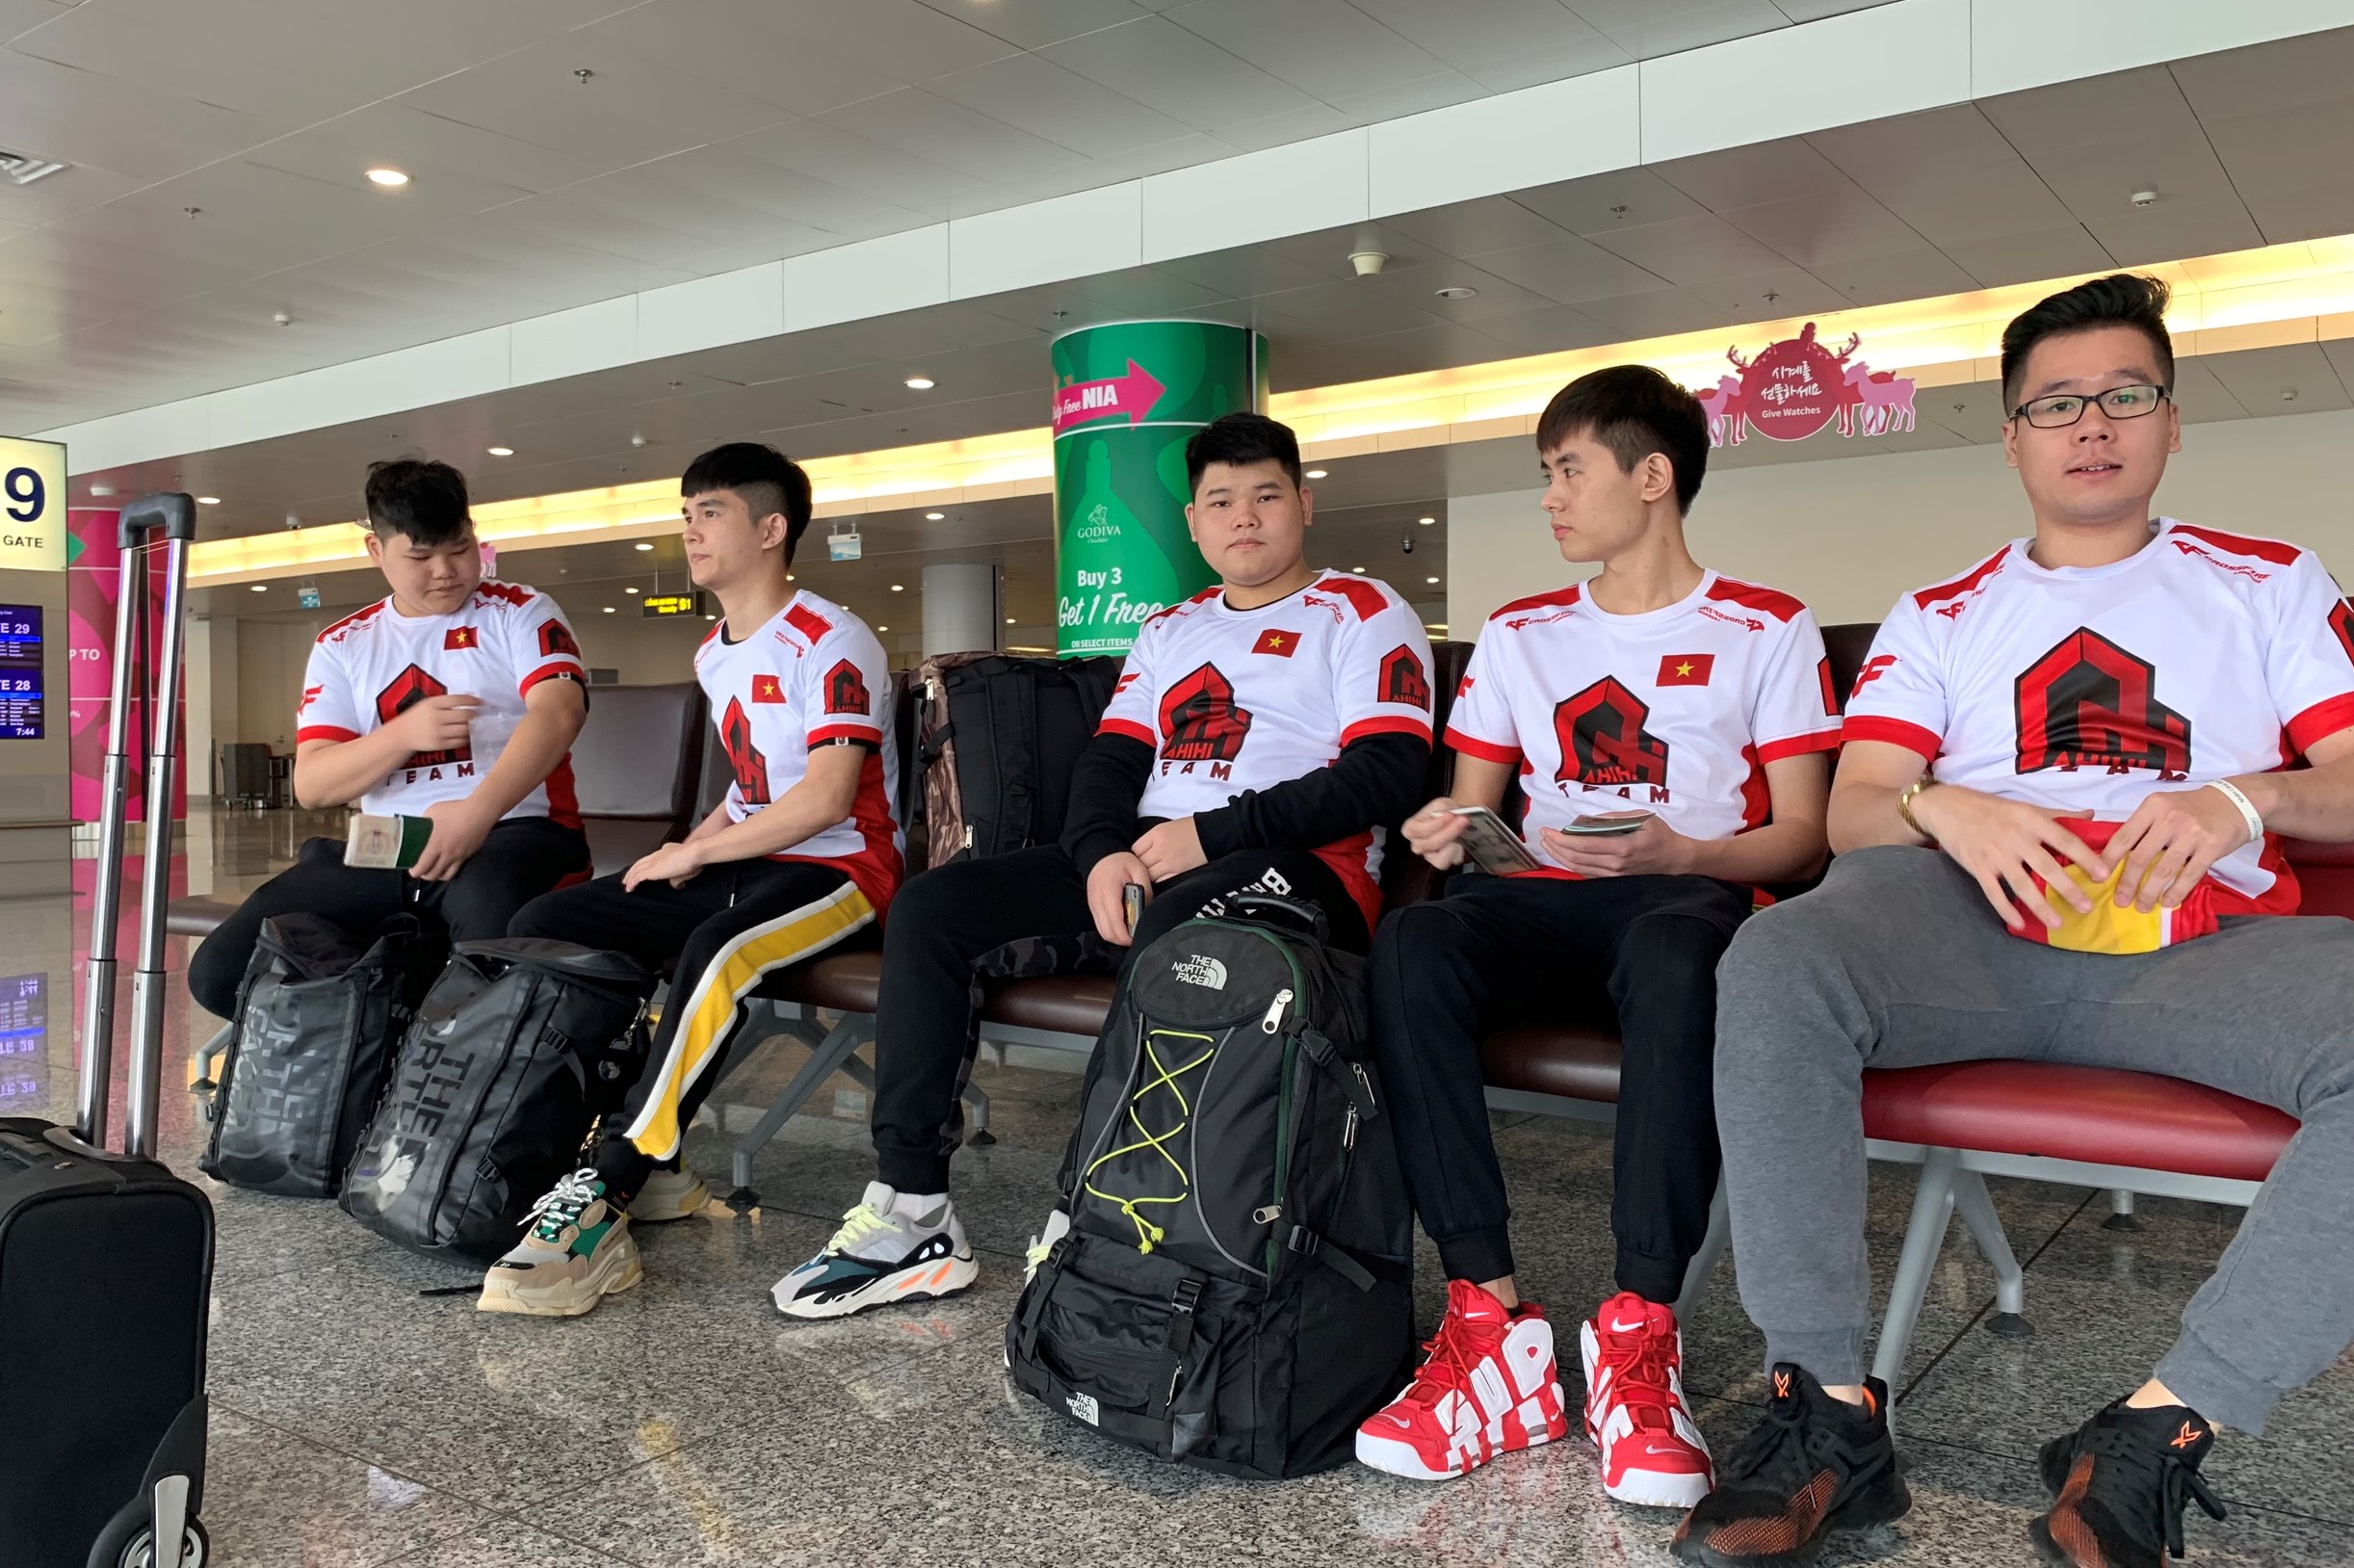  CrossFire Legends: Tuyển Việt Nam chính thức lên đường tham dự chung kết thế giới CFS 2018 tại Trung Quốc